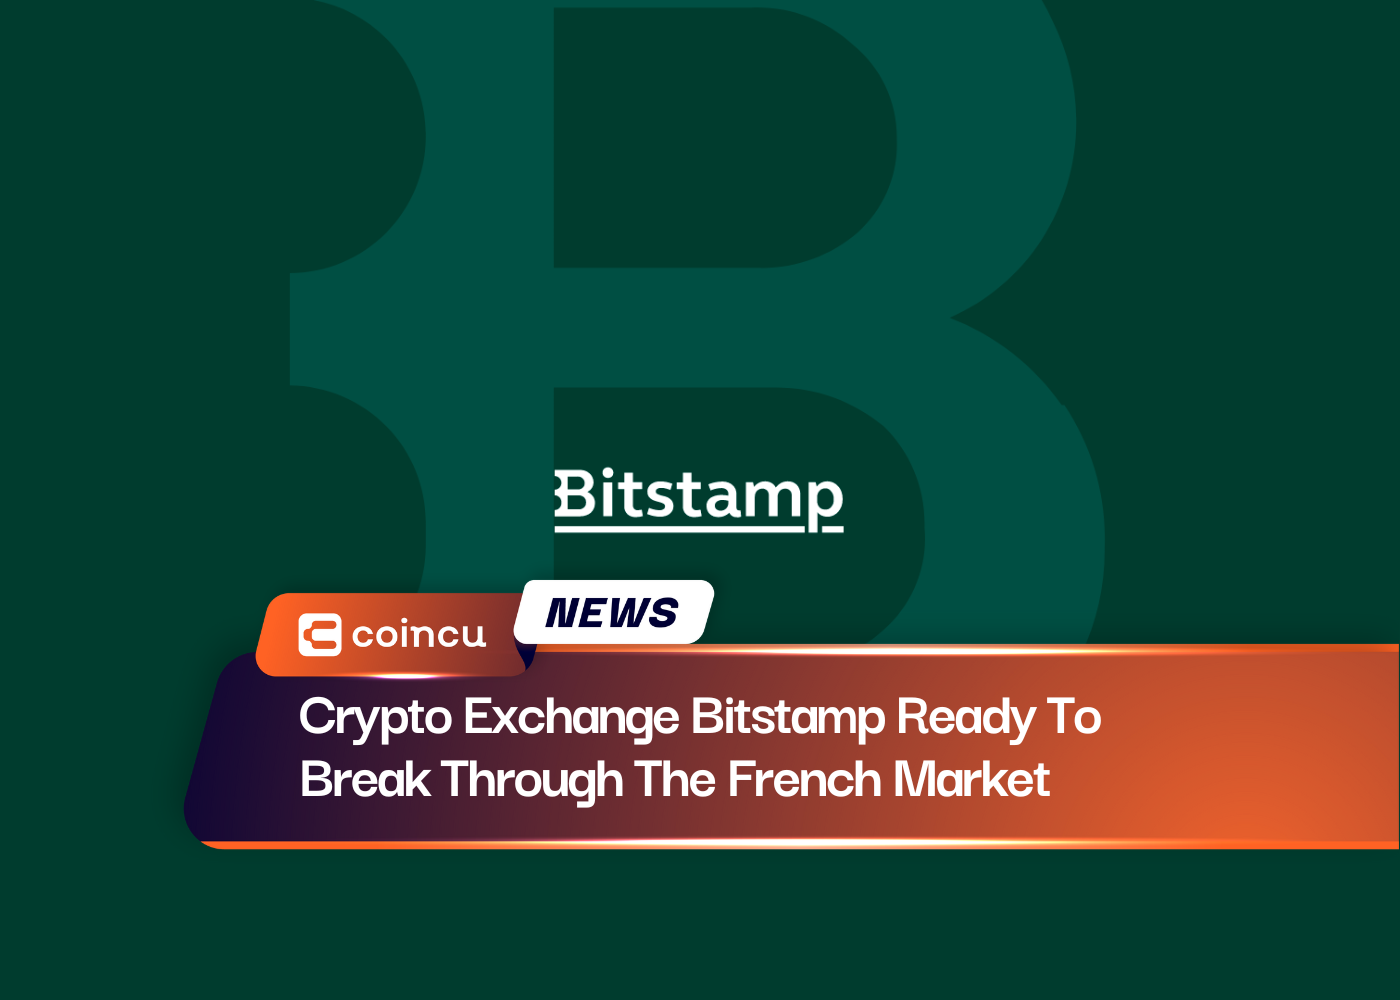 Bitstamp de criptoexchange listo para abrirse paso en el mercado francés